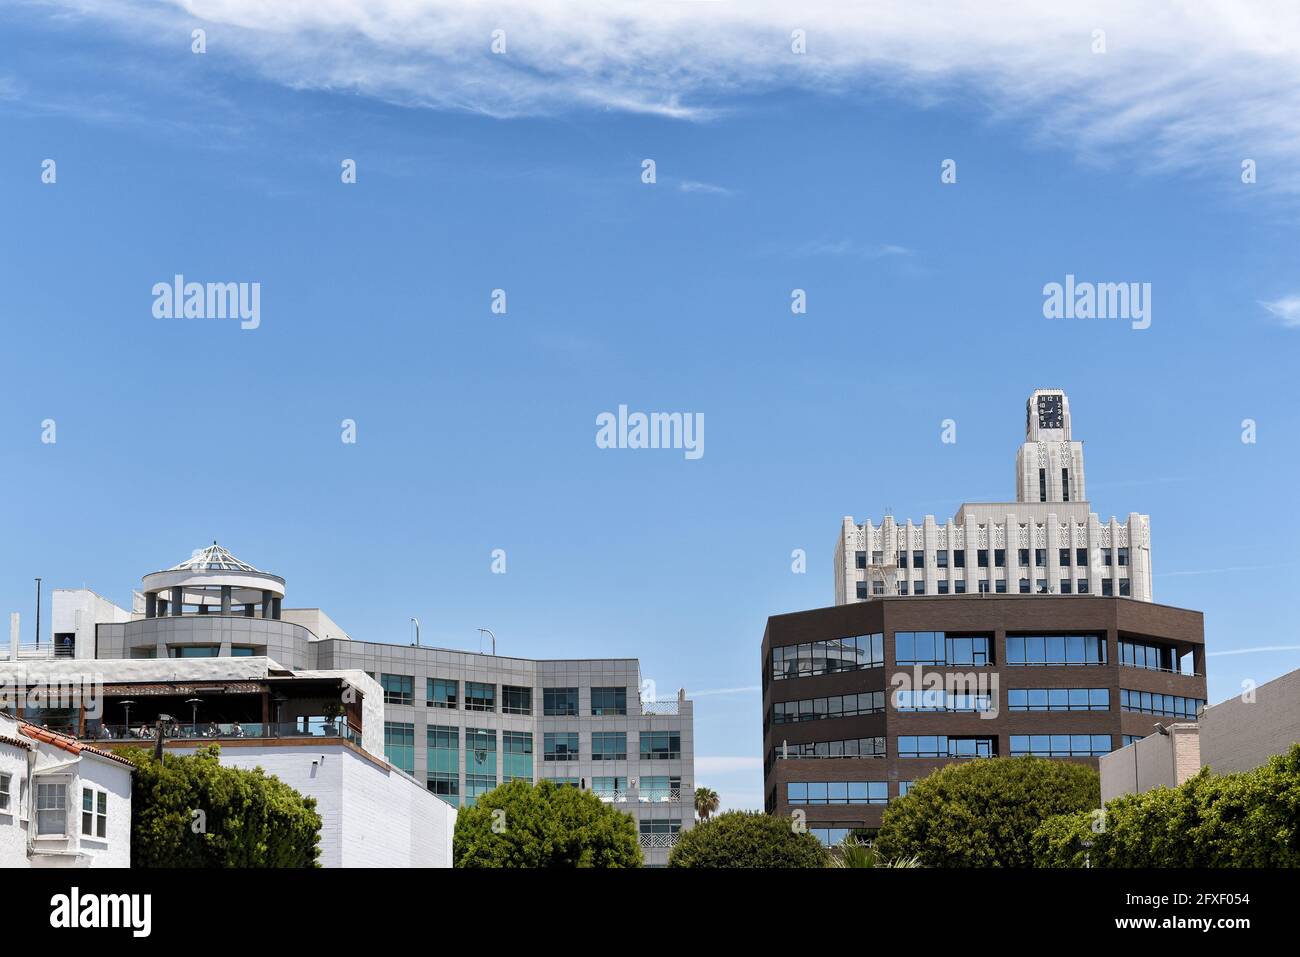 SANTA MONICA, KALIFORNIEN - 25. MAI 2021: Skyline von Santa Monica, moderne und historische Gebäude vor einem blau bewölkten Himmel. Stockfoto